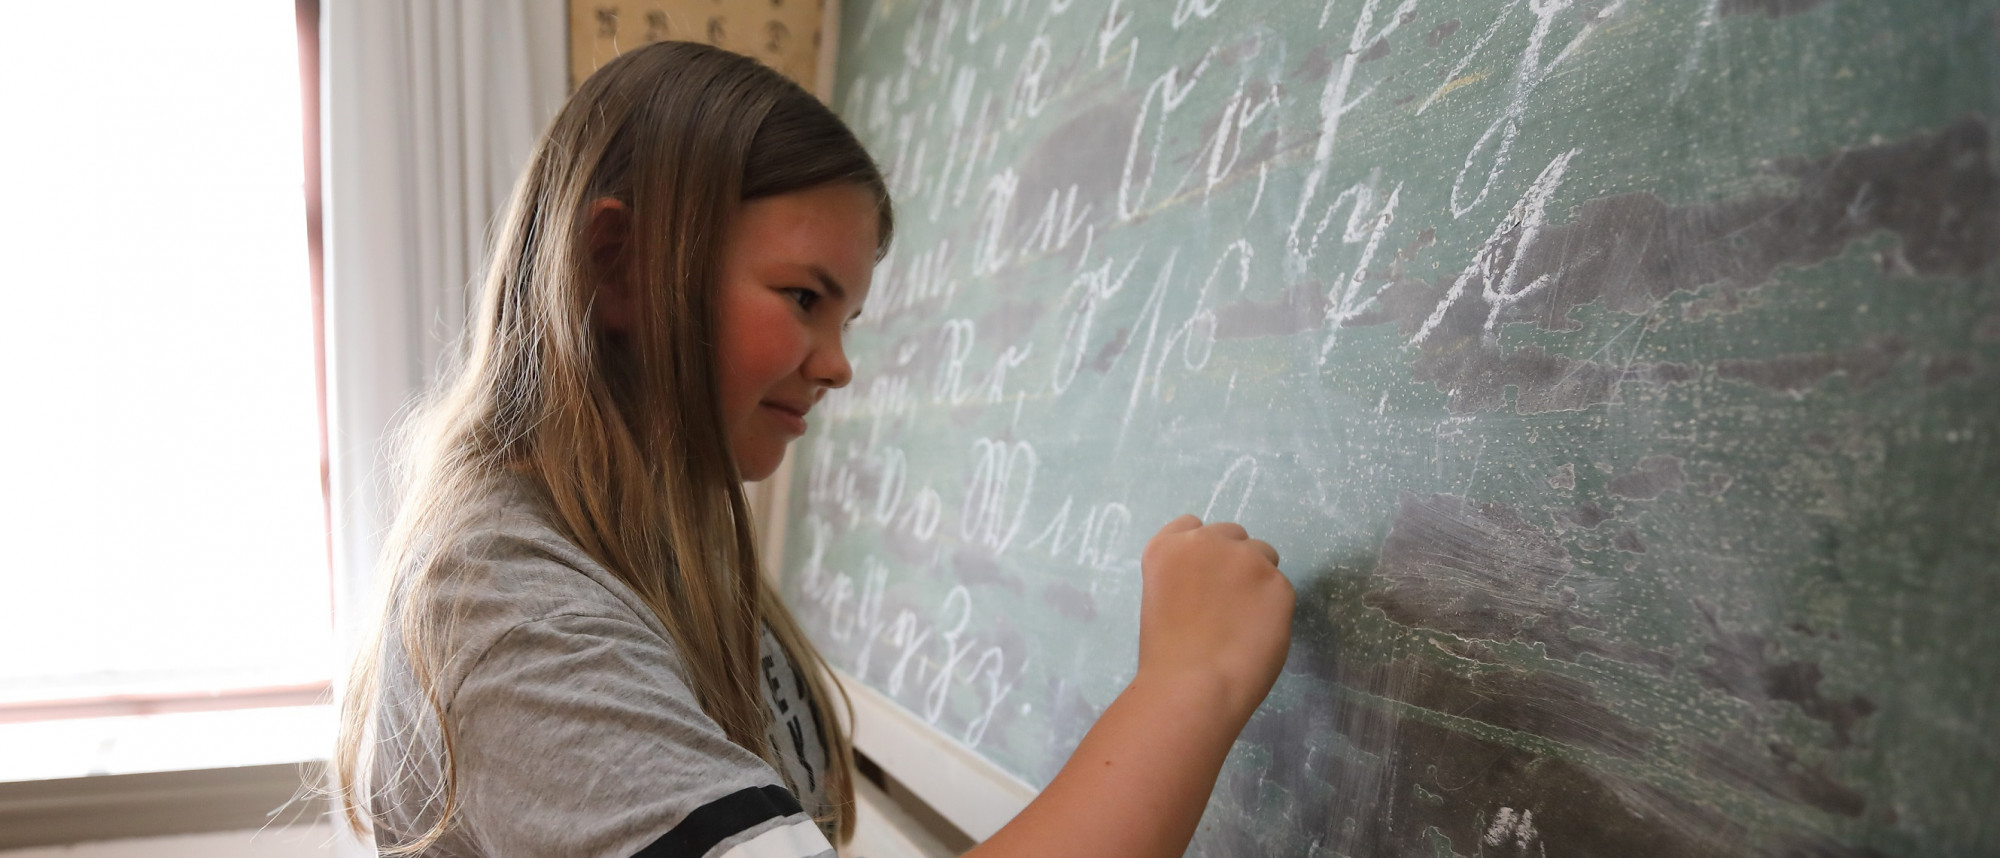 Ein Mädchen steht an einer alten Schiefertafel und schreibt auf diese mit Kreide.